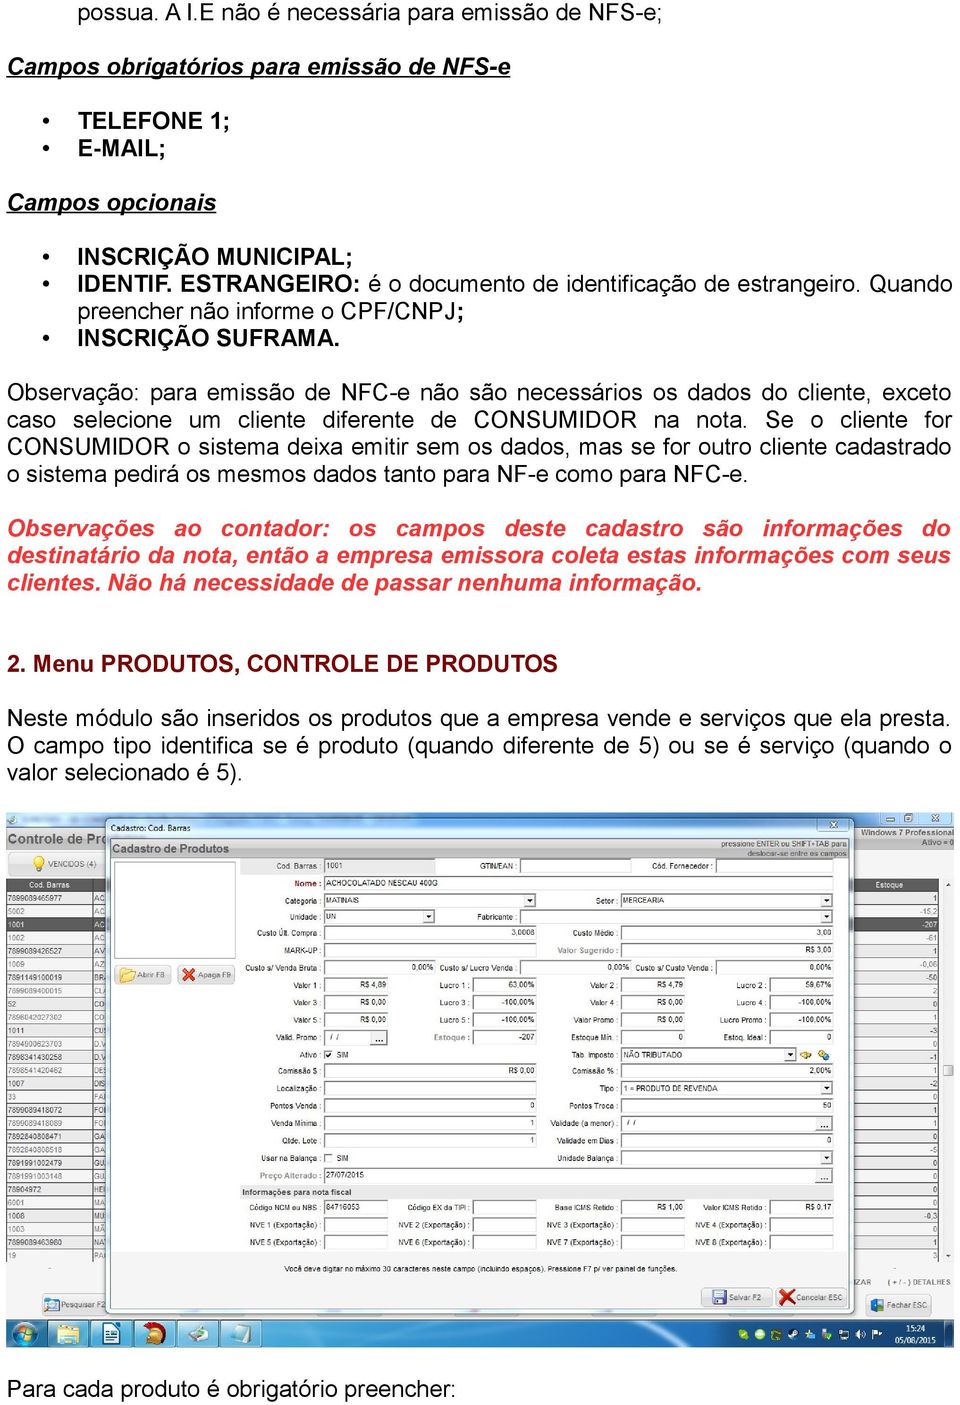 Observação: para emissão de NFC-e não são necessários os dados do cliente, exceto caso selecione um cliente diferente de CONSUMIDOR na nota.